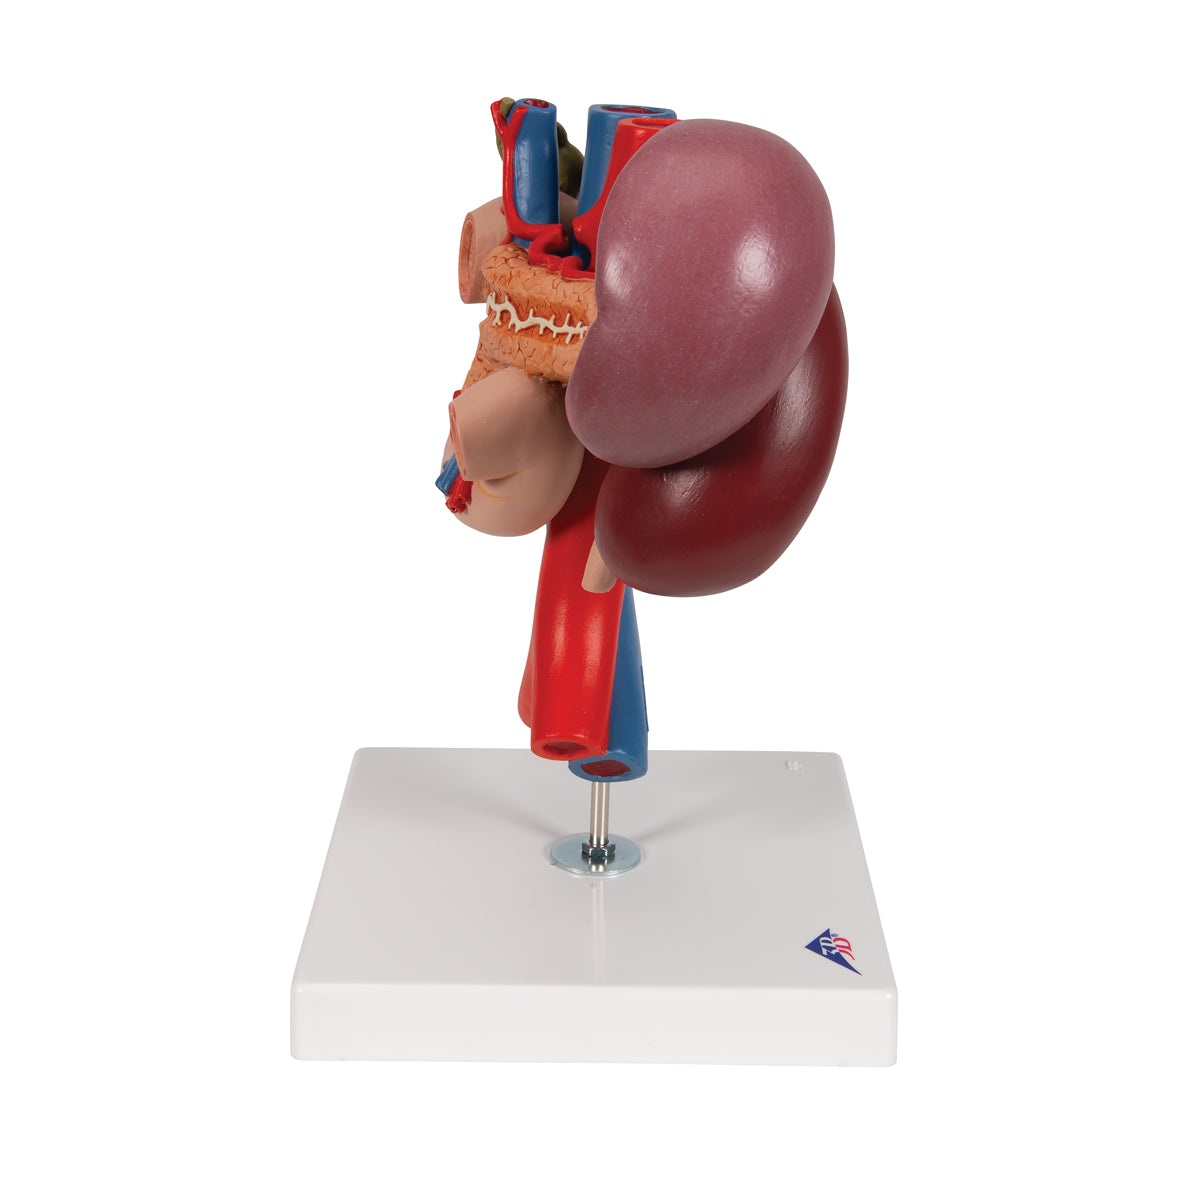 Detaljerad modell av tolvfingertarmen och förhållandet mellan bukspottkörteln och andra organ - kan separeras i 3 delar